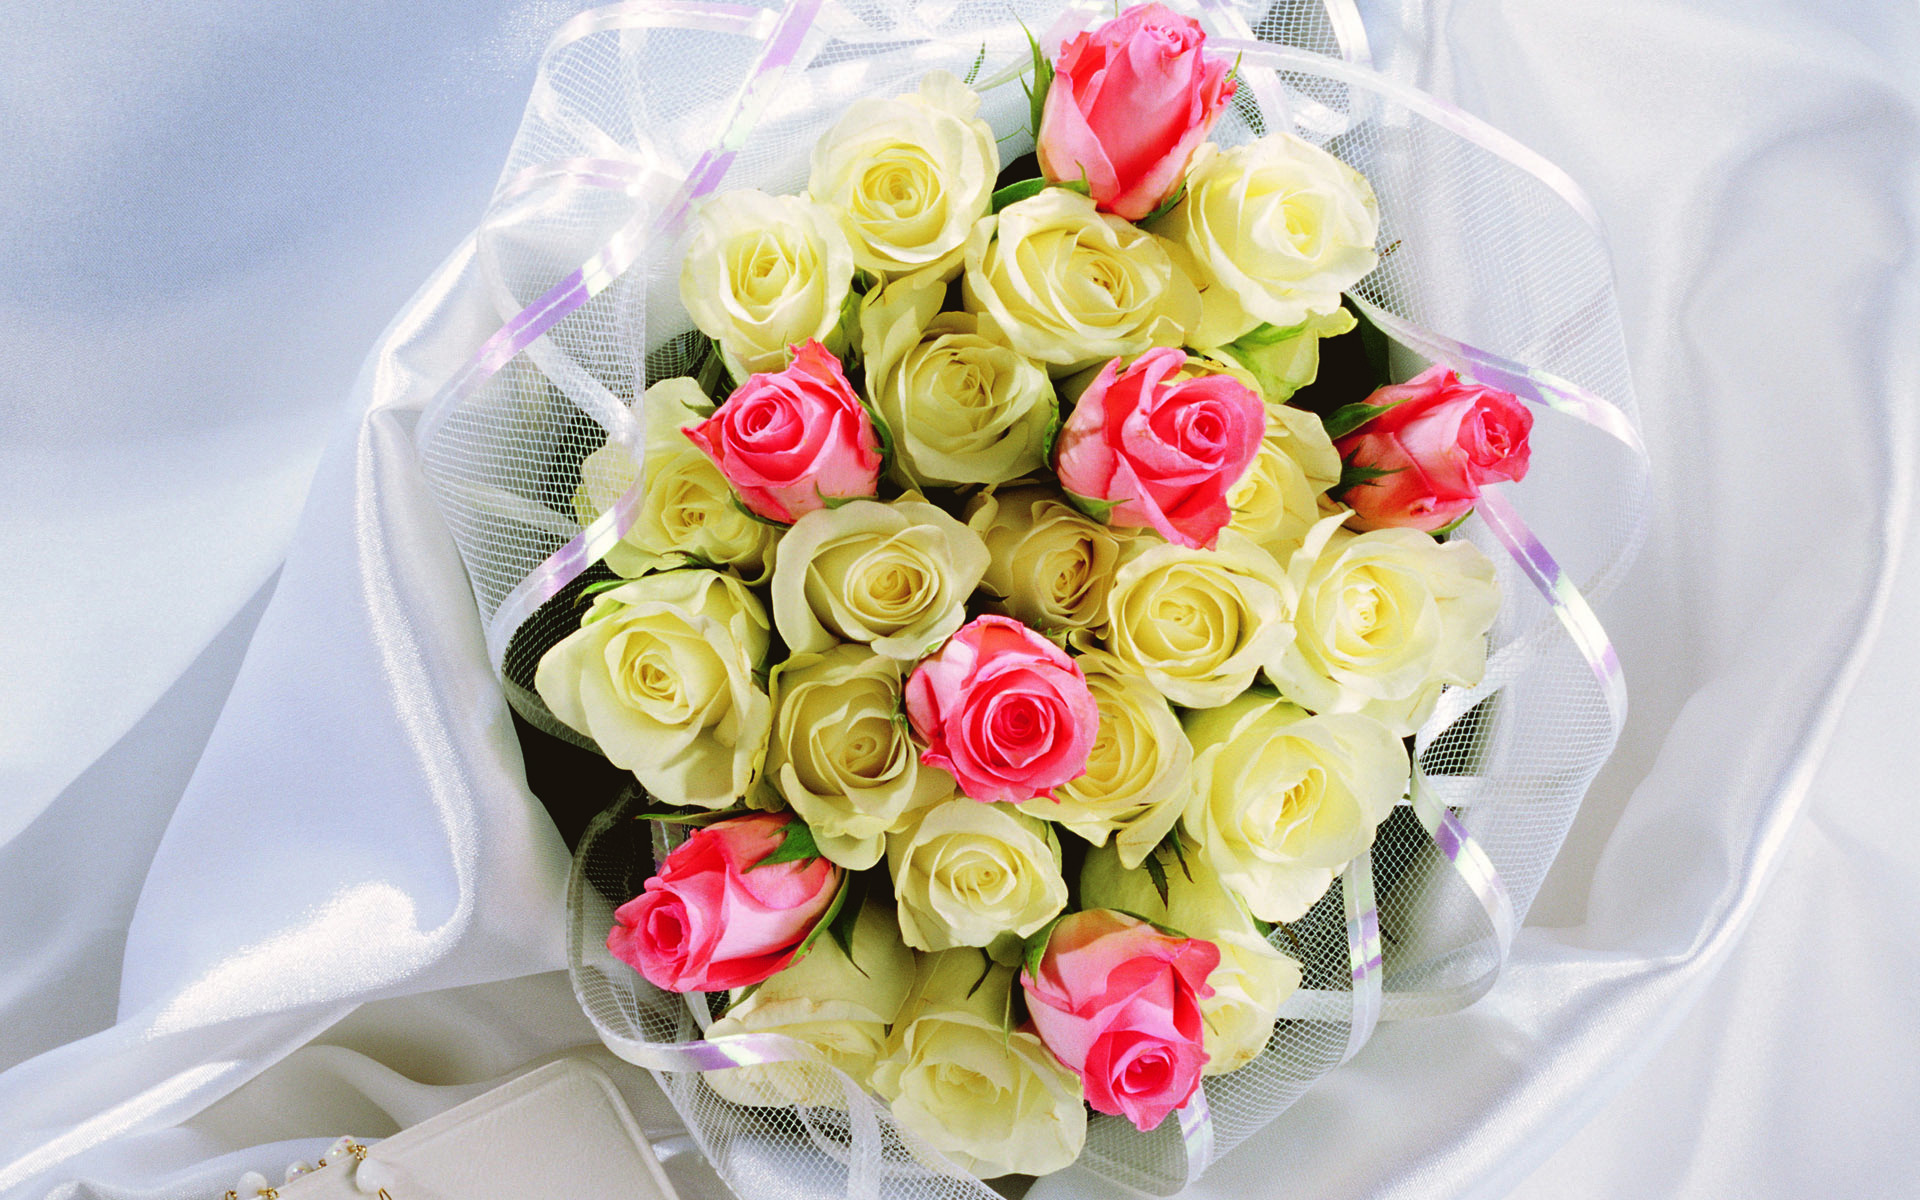 531 9 باقات زهور - اجمل باقات الزهور دينا عمار